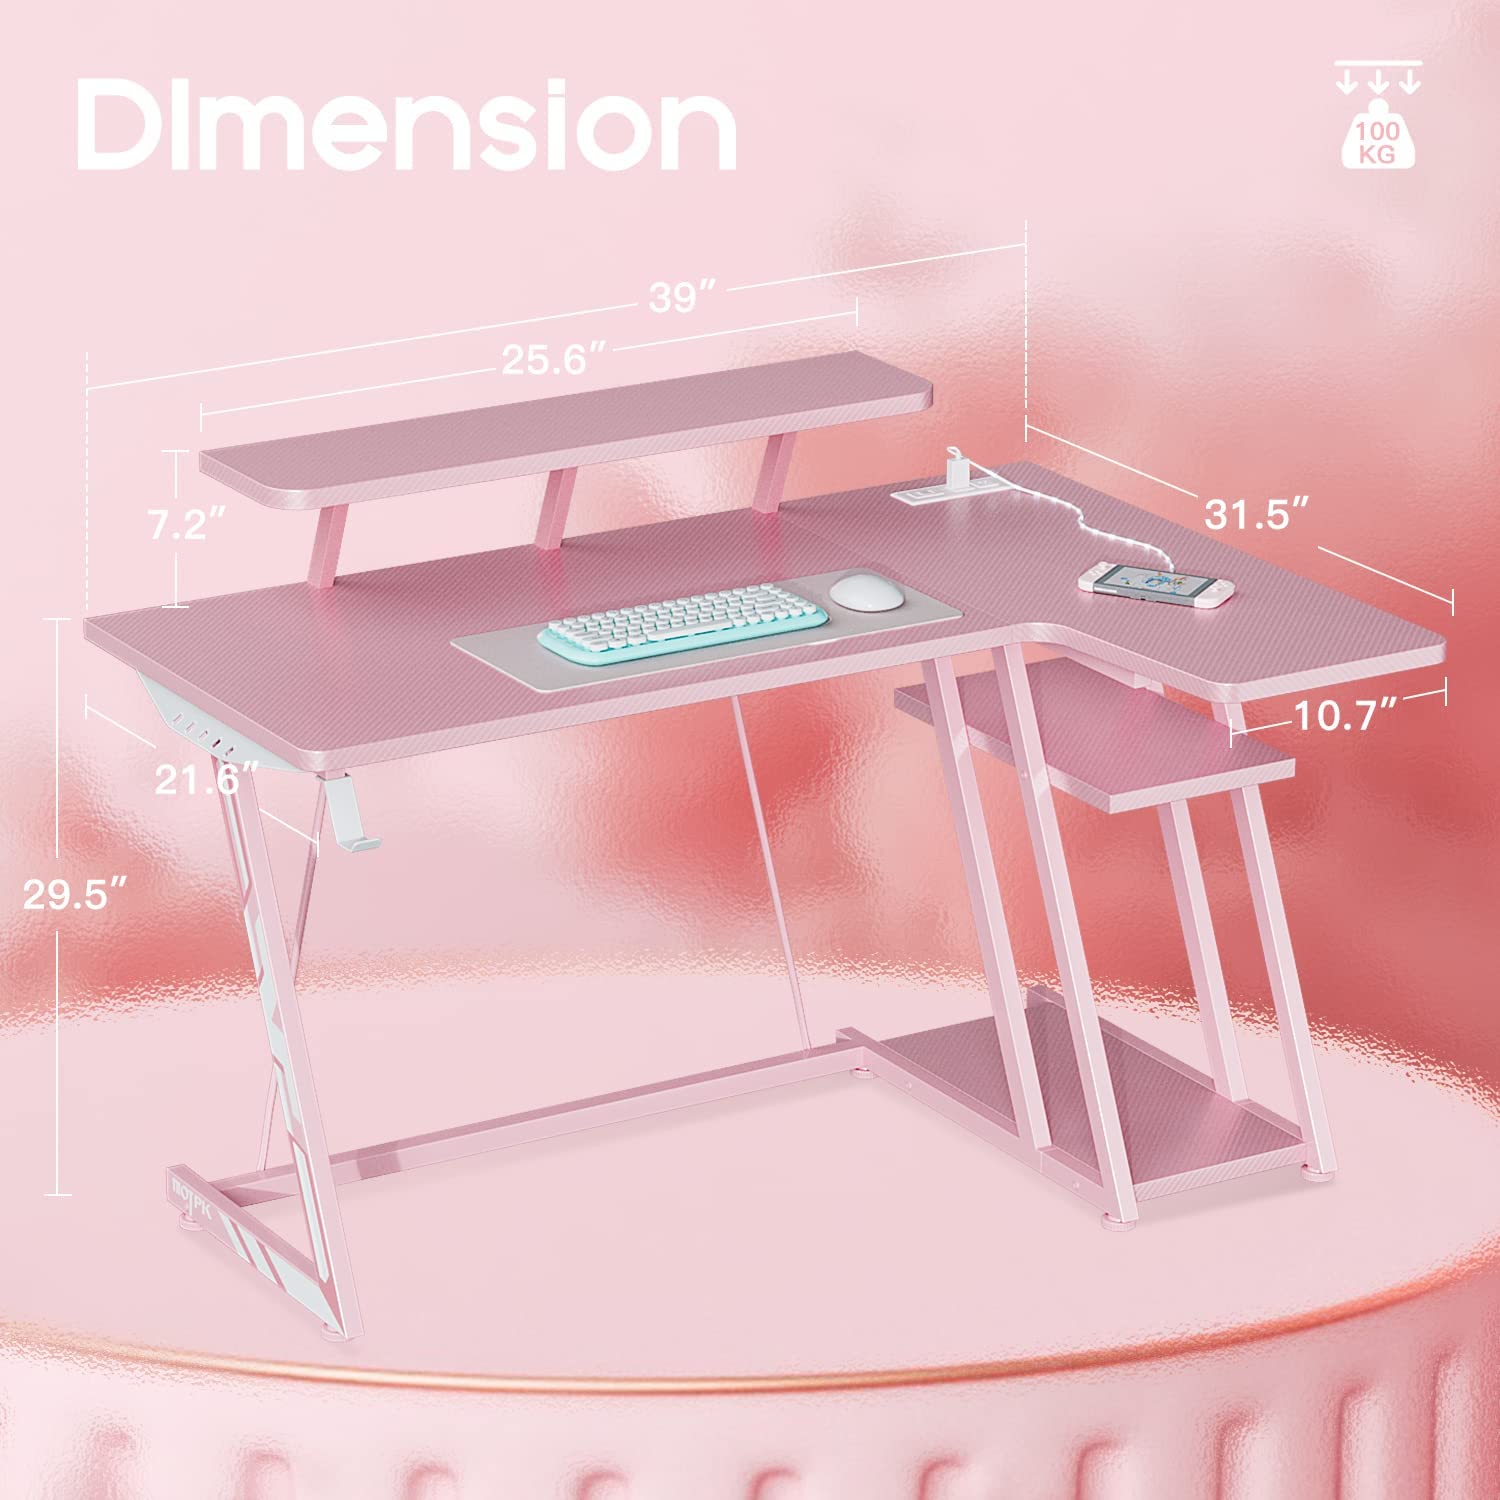 Pink Carbon Gaming Desk